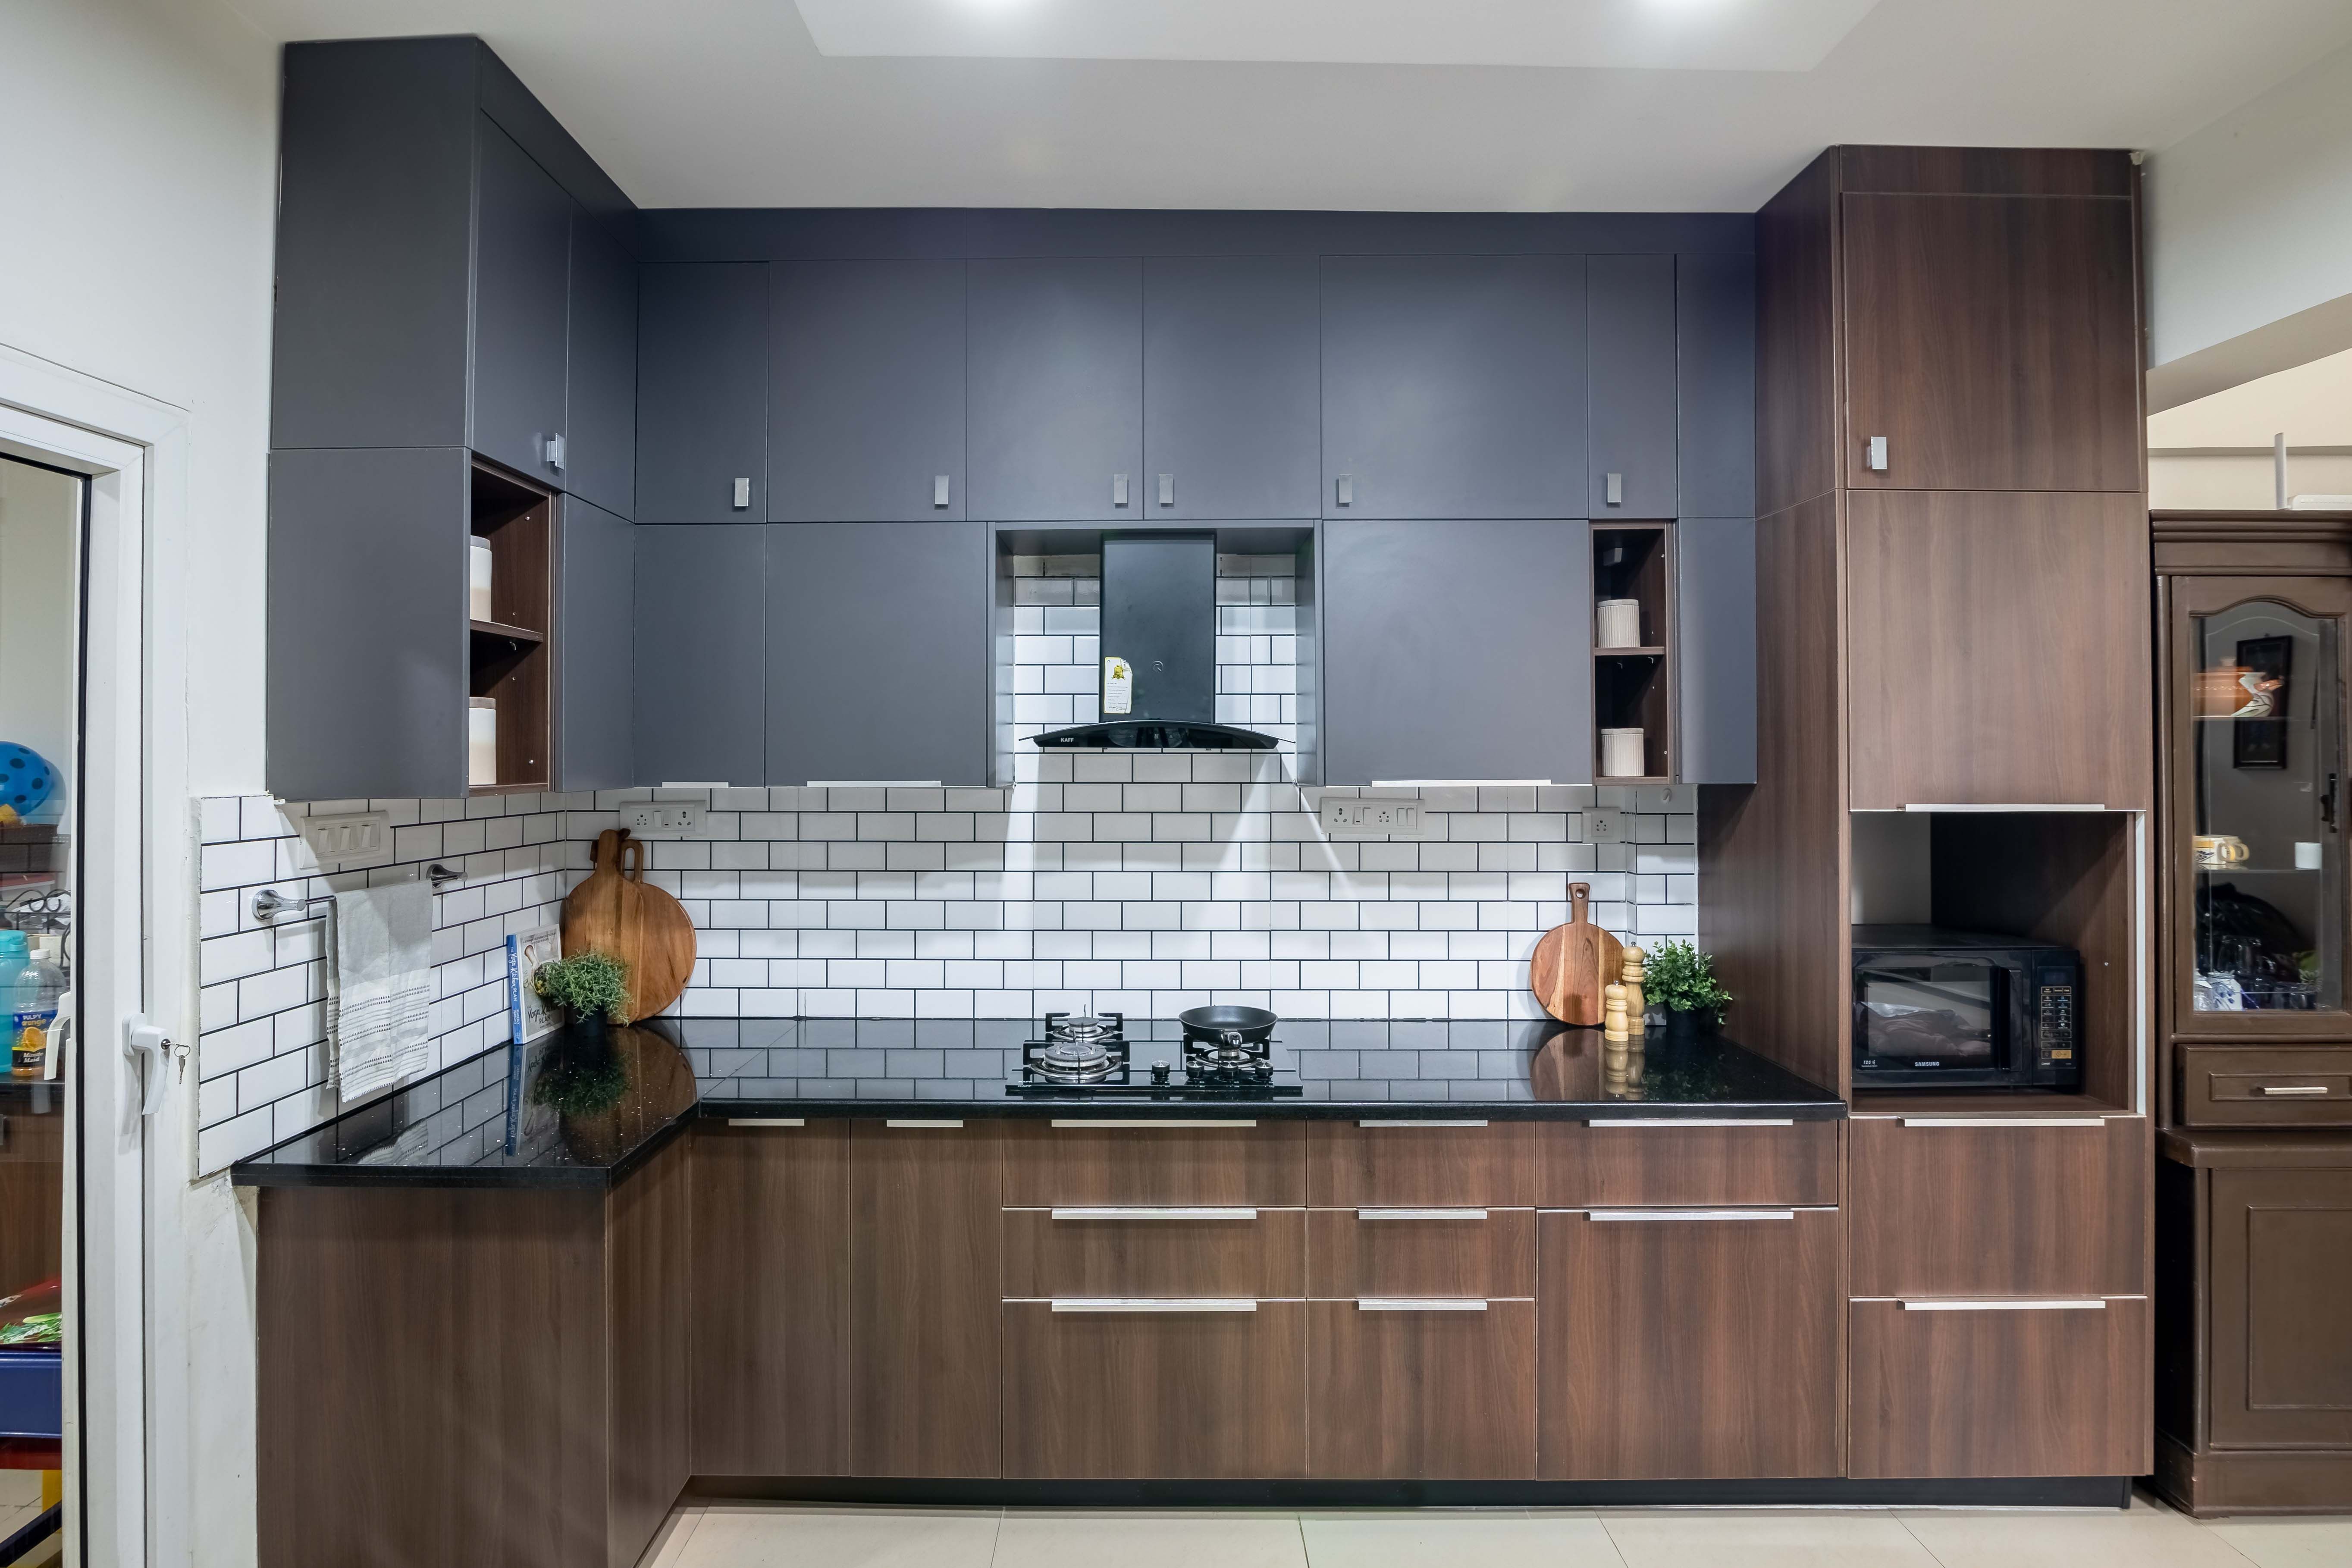 Modern L-Shaped Kitchen Design With Patterned Backsplash Tiles